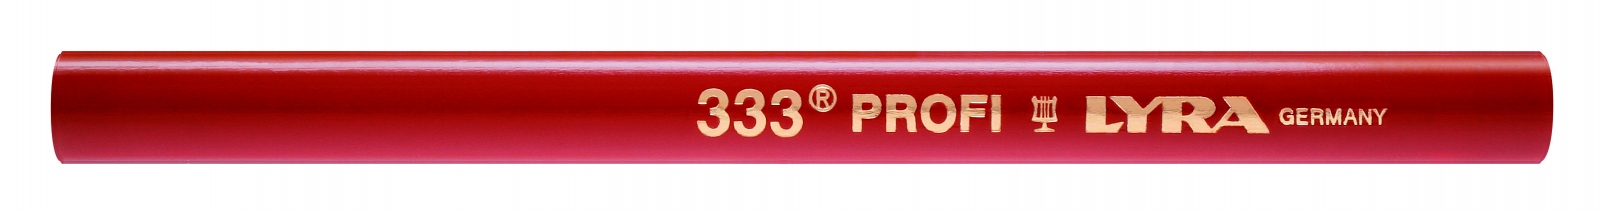 Crayon de charpentier Profi 333 Lyra 30 cm